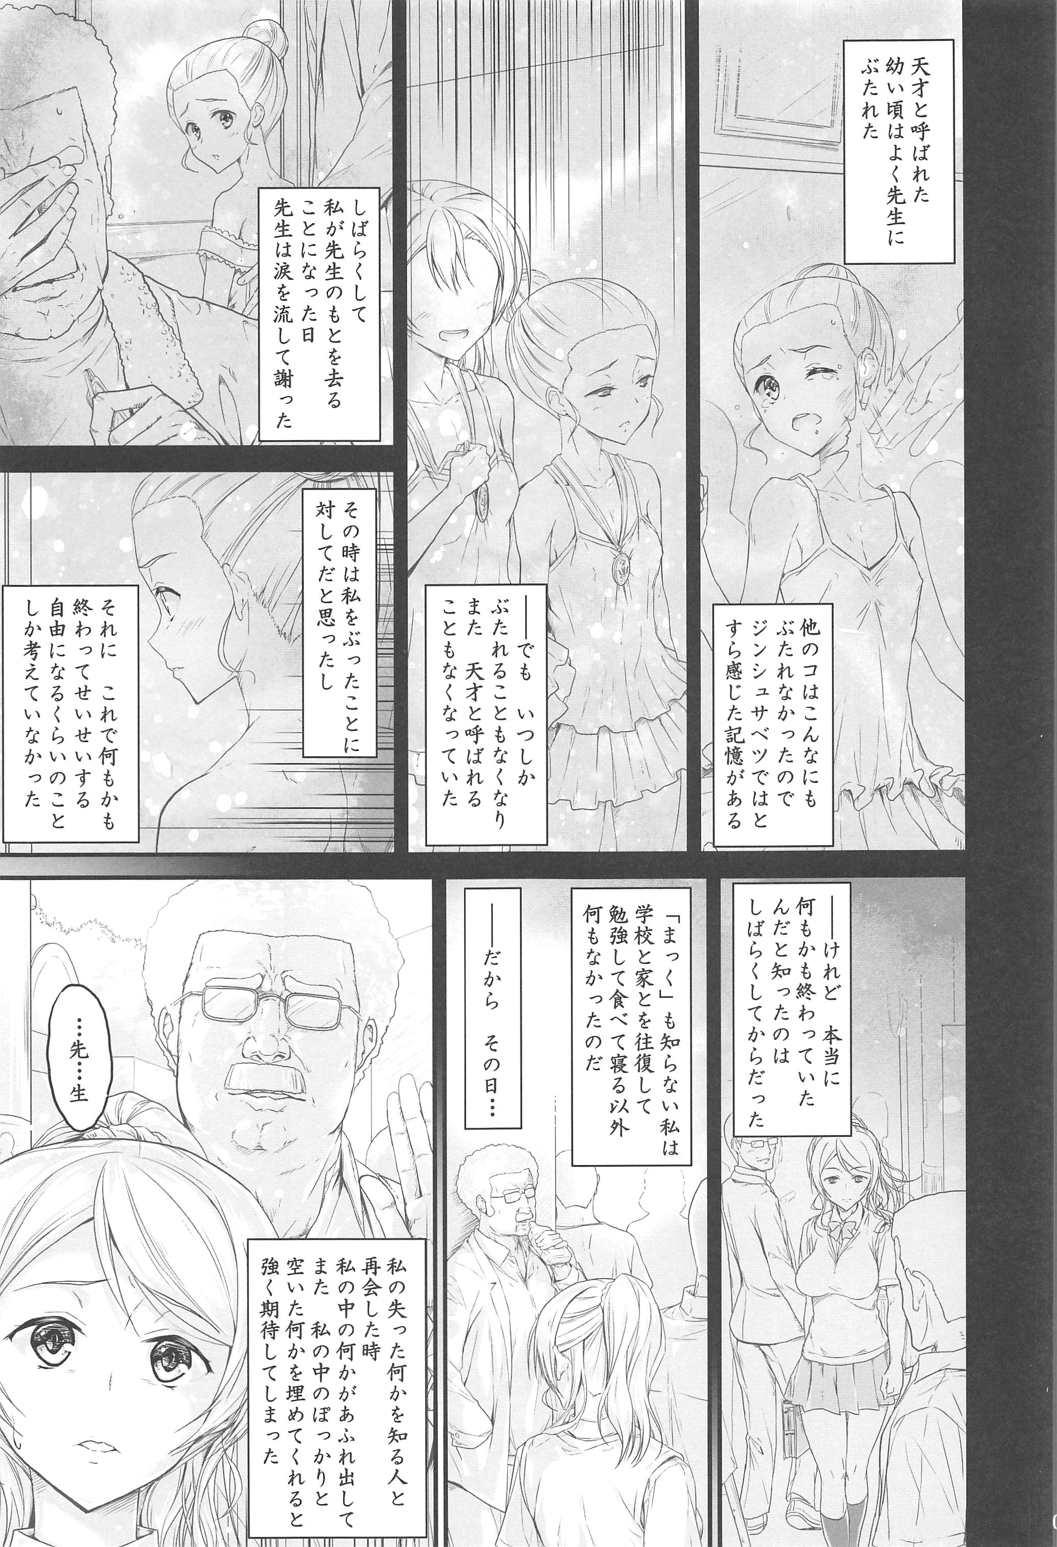 Deutsch Kouhensachi no Yuutousei de Jiki Seito Kaichou Saiyuuryoku Kouho no Ninen Erichika - Love live Handjob - Page 3